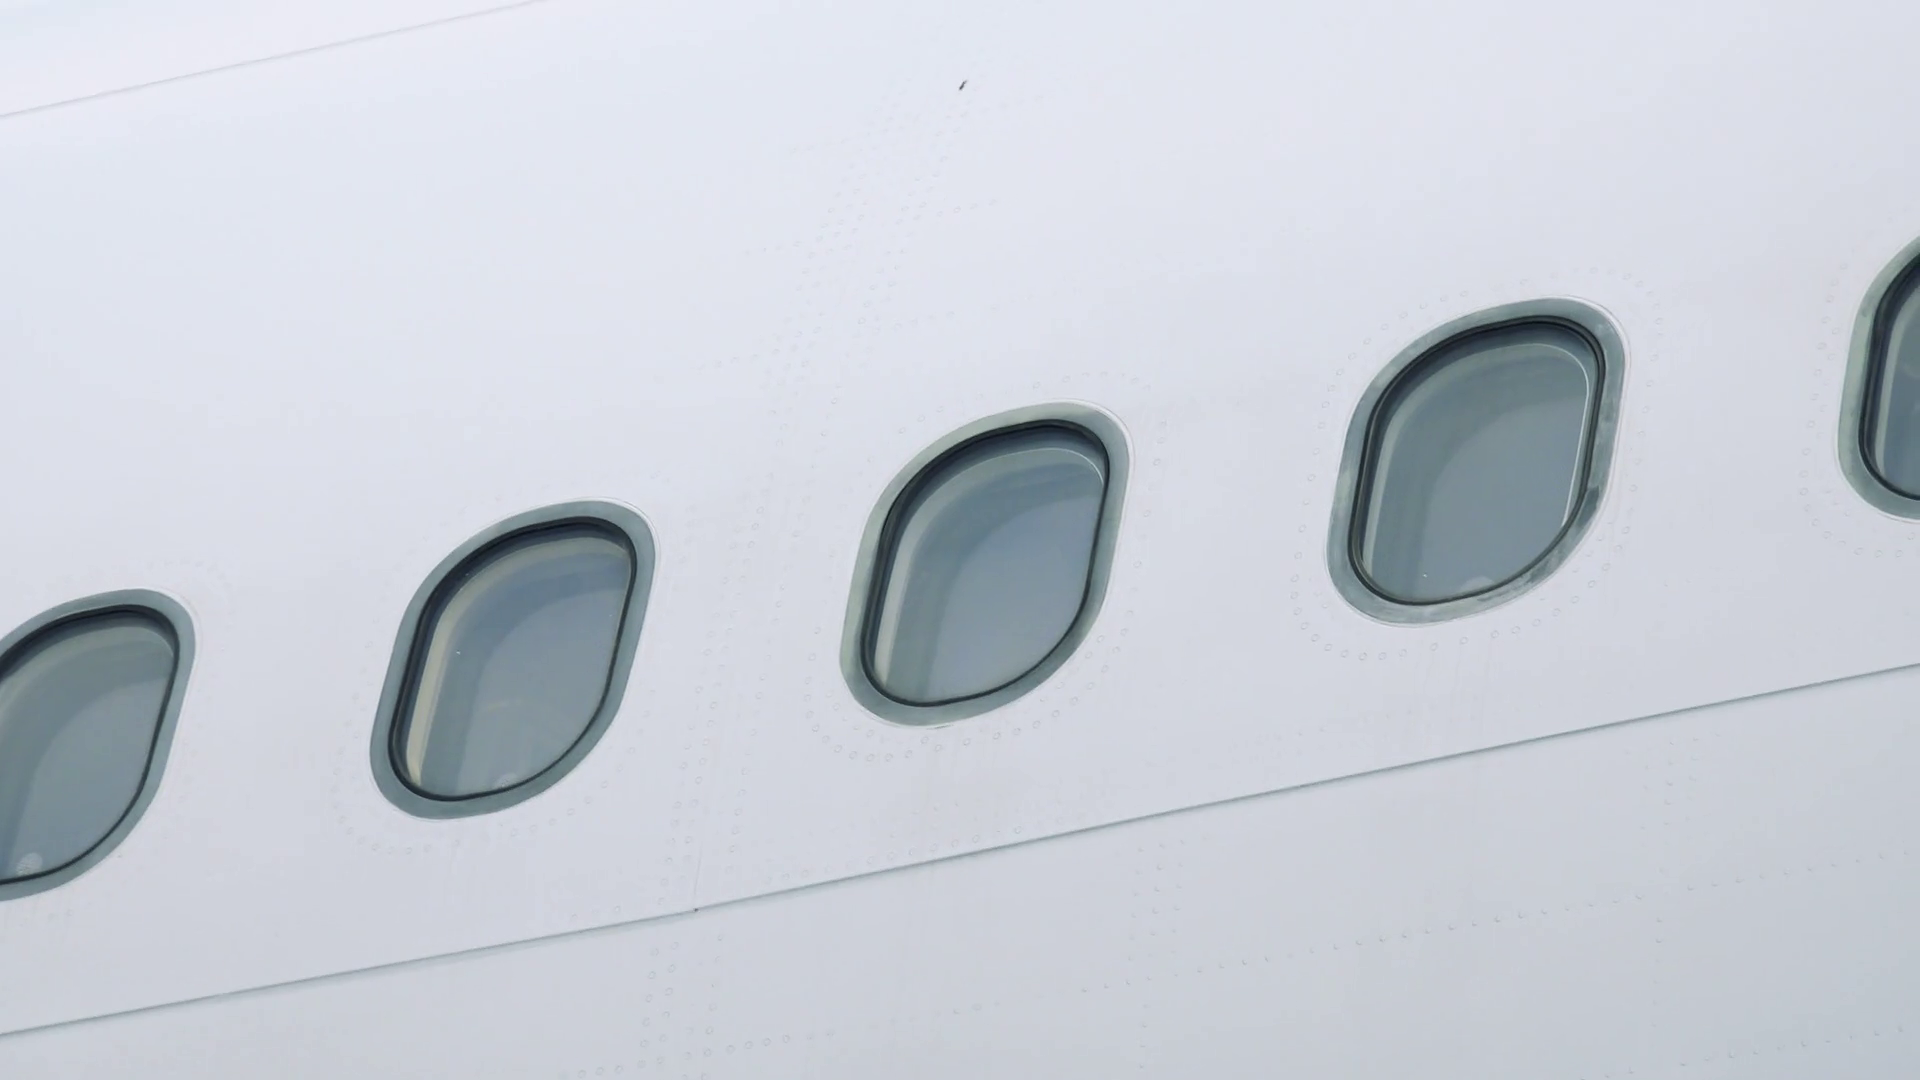 Έχετε αναρωτηθεί; – Γιατί τα παράθυρα των αεροπλάνων είναι οβάλ;